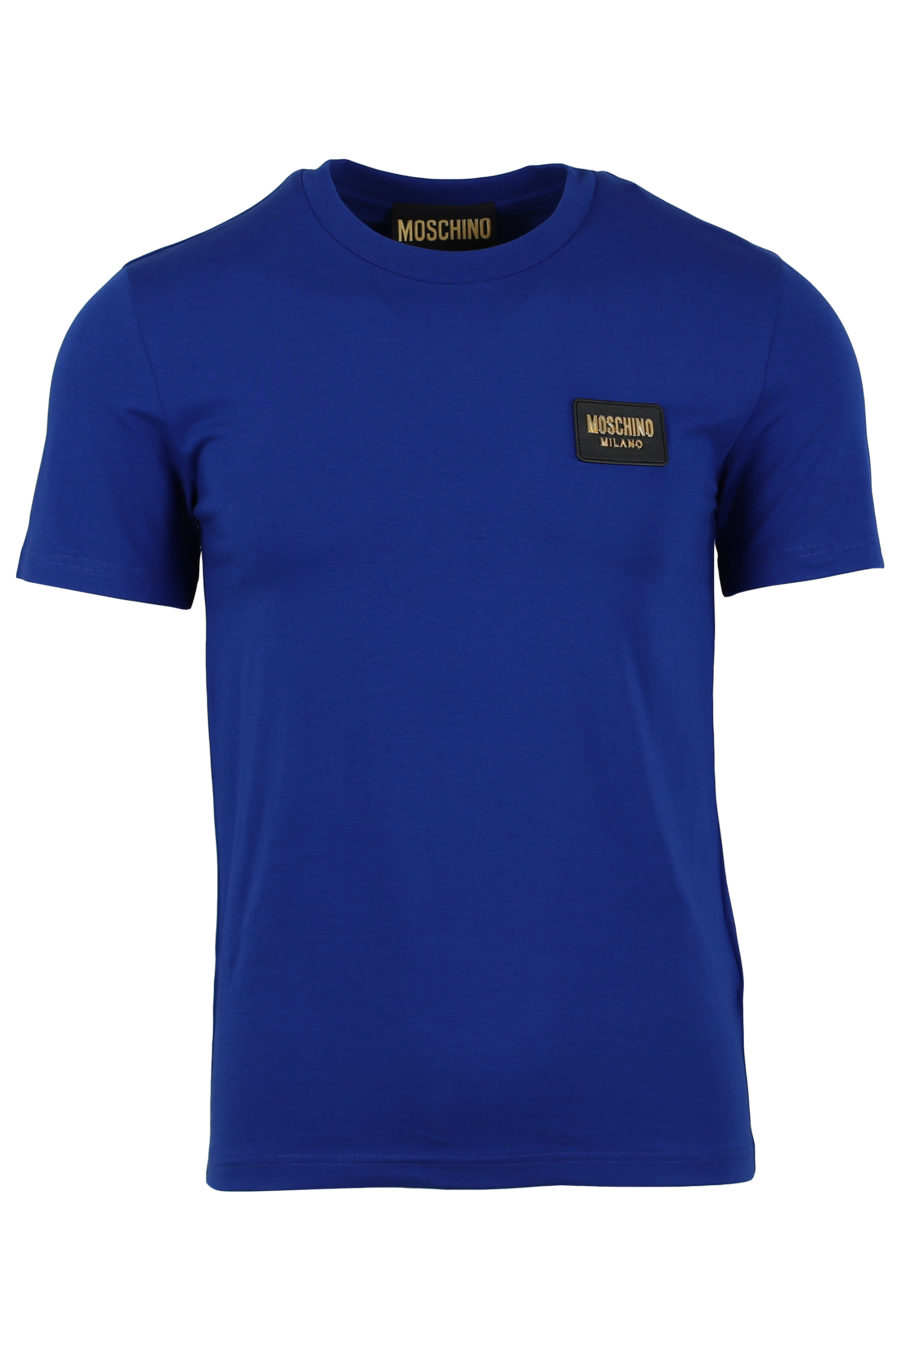 Camiseta azul logo en color oro - IMG 0925